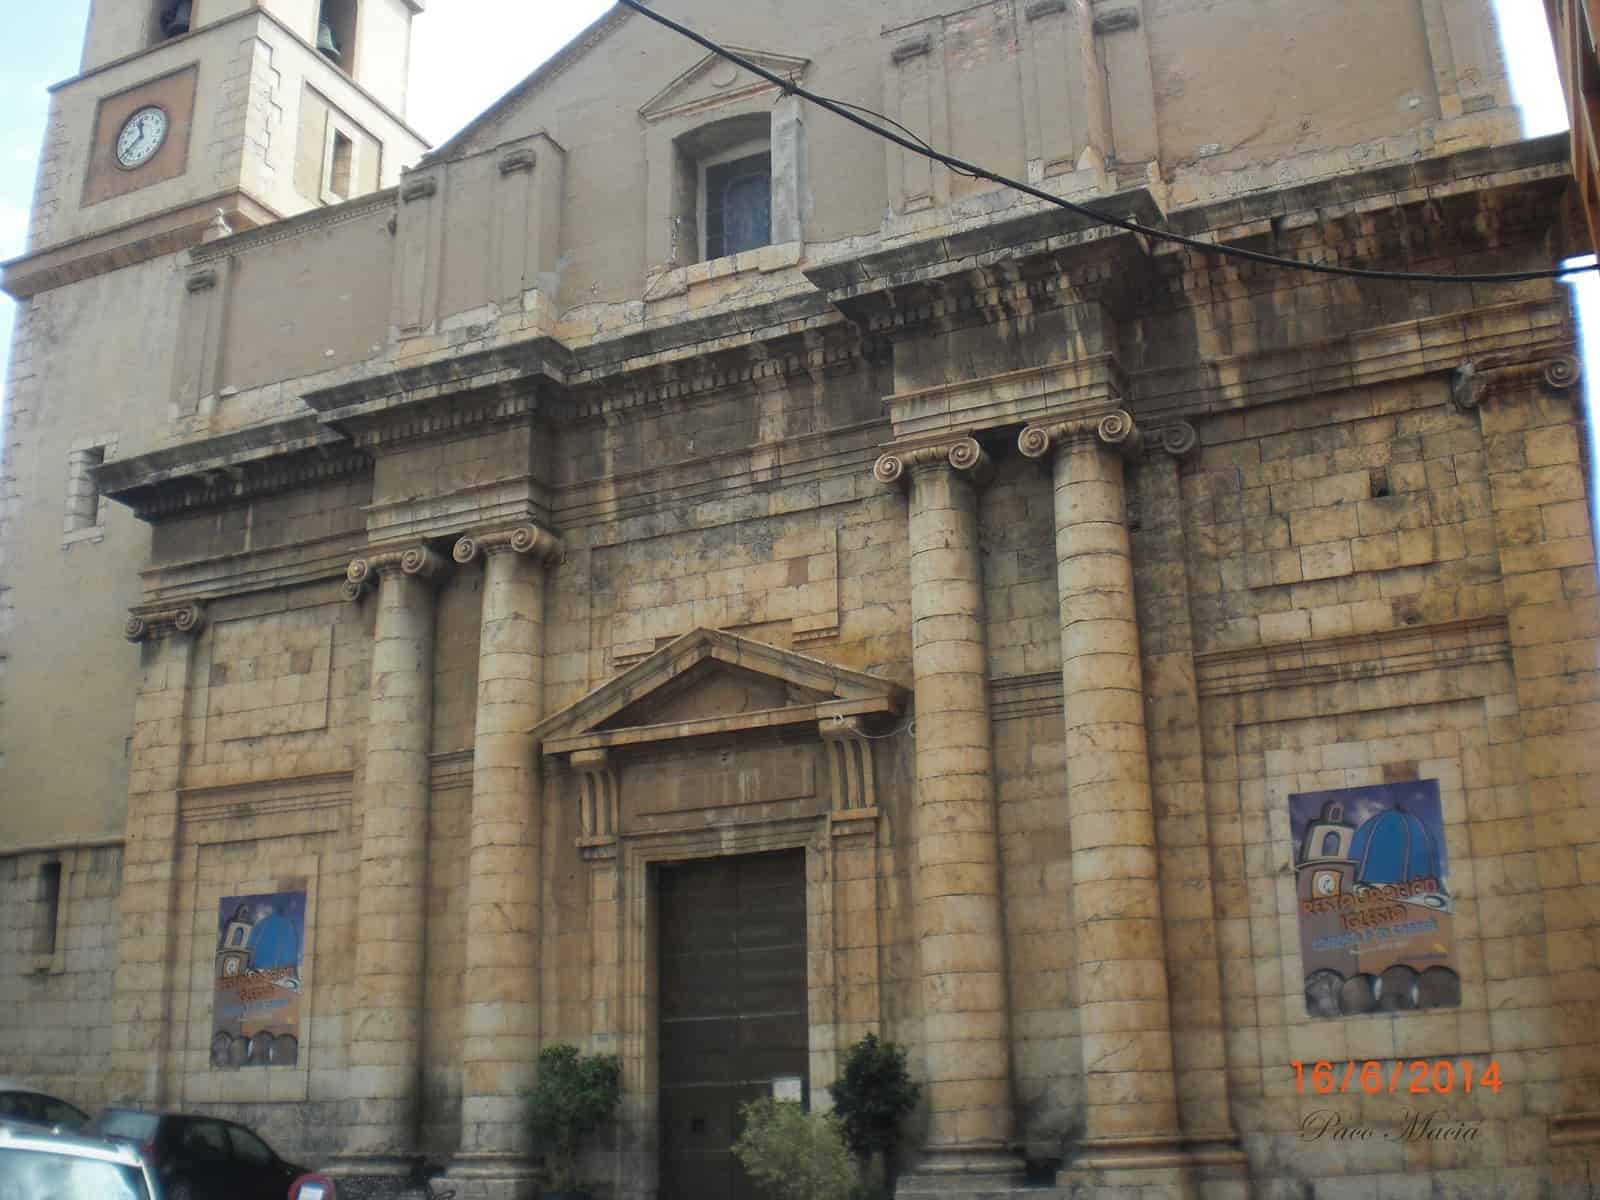 1434975274_15. Fachada de la iglesia de Callosa d'en Sarrià